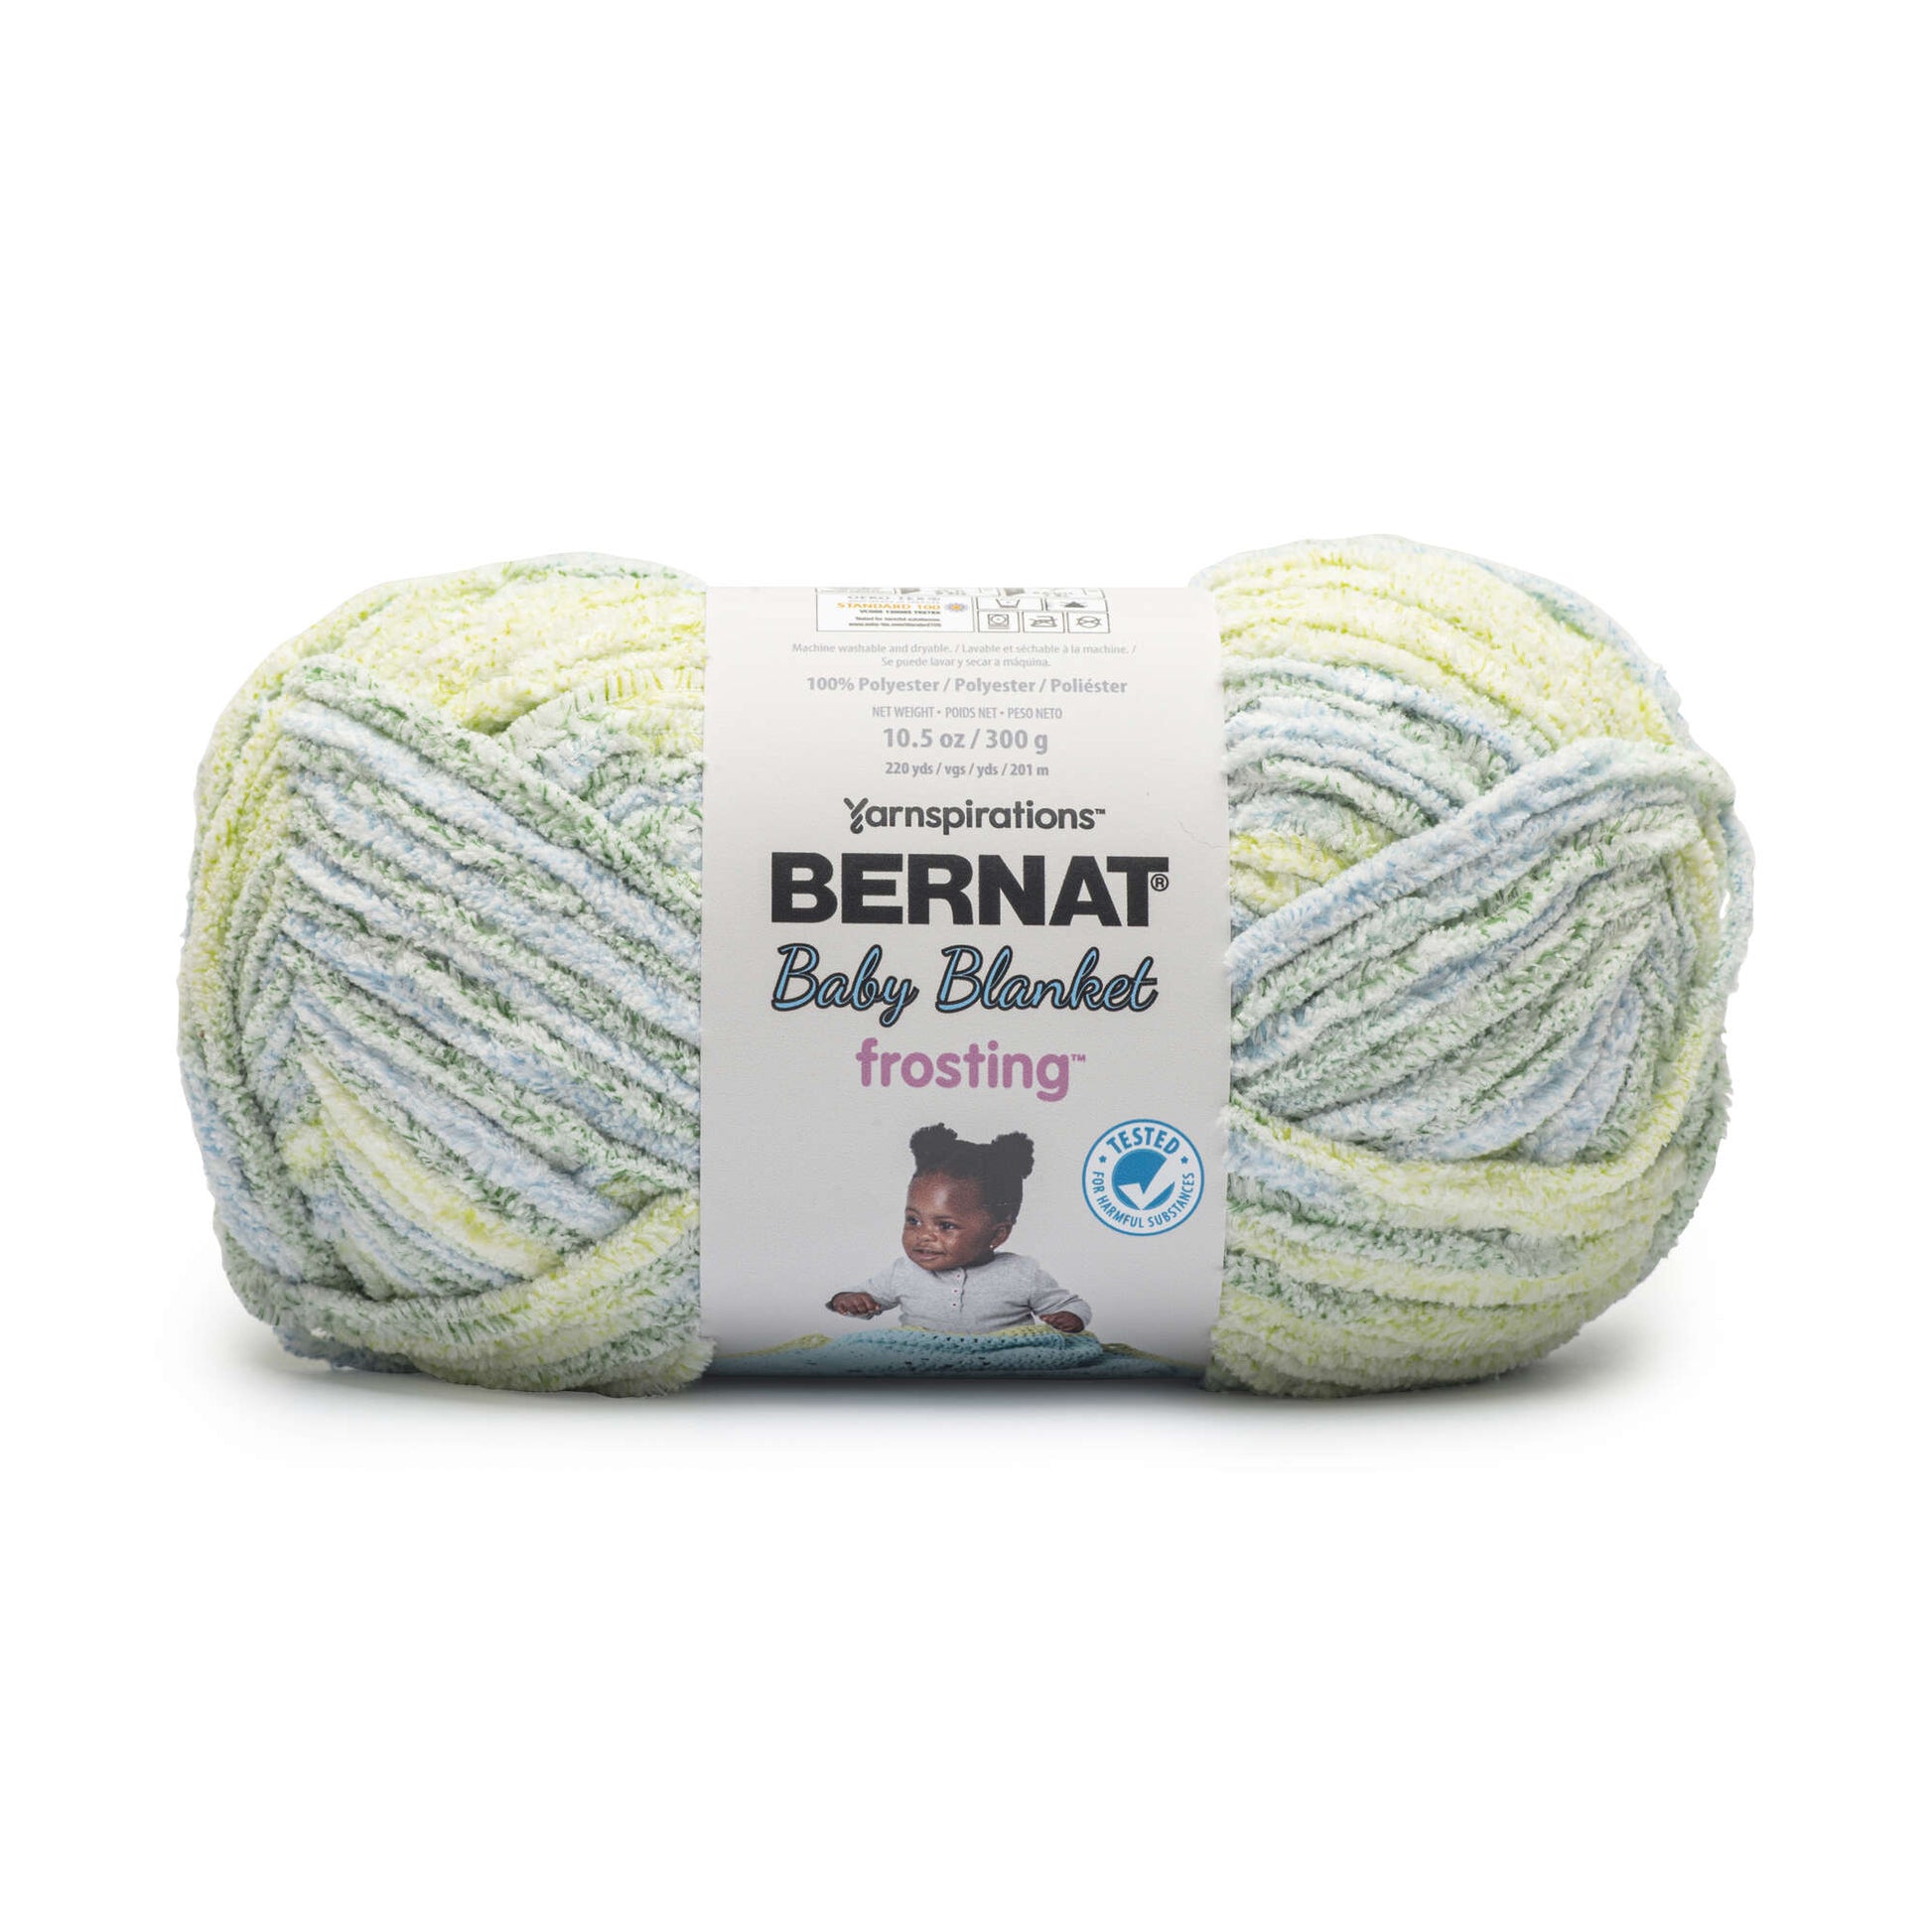 Bernat Baby Blanket Frosting Yarn (300g/10.6oz)